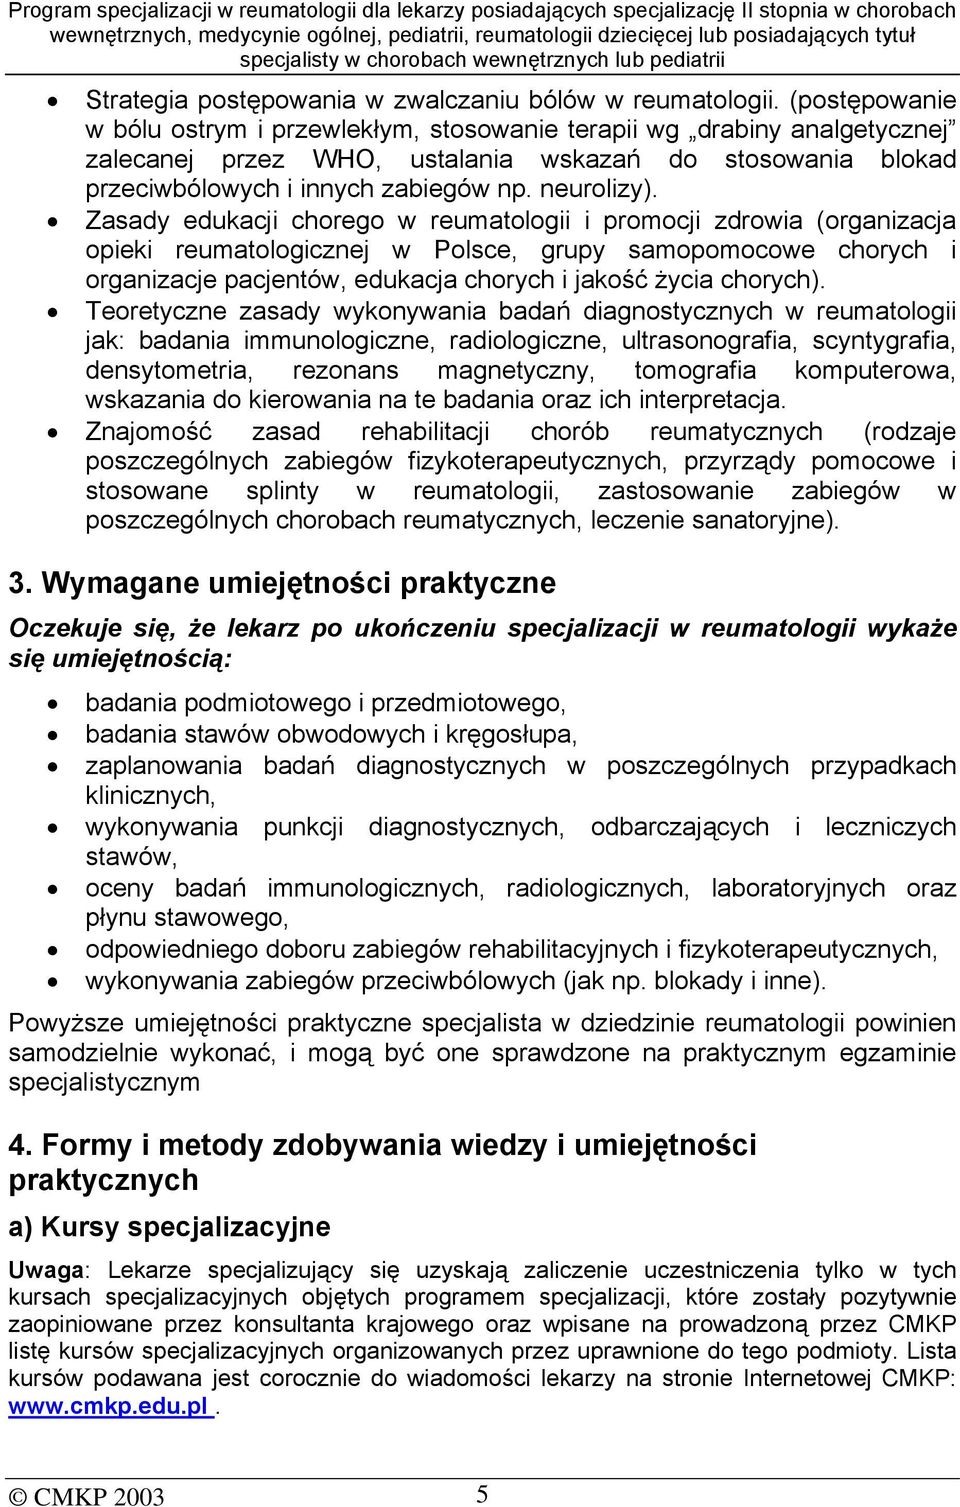 Zasady edukacji chorego w reumatologii i promocji zdrowia (organizacja opieki reumatologicznej w Polsce, grupy samopomocowe chorych i organizacje pacjentów, edukacja chorych i jakość życia chorych).